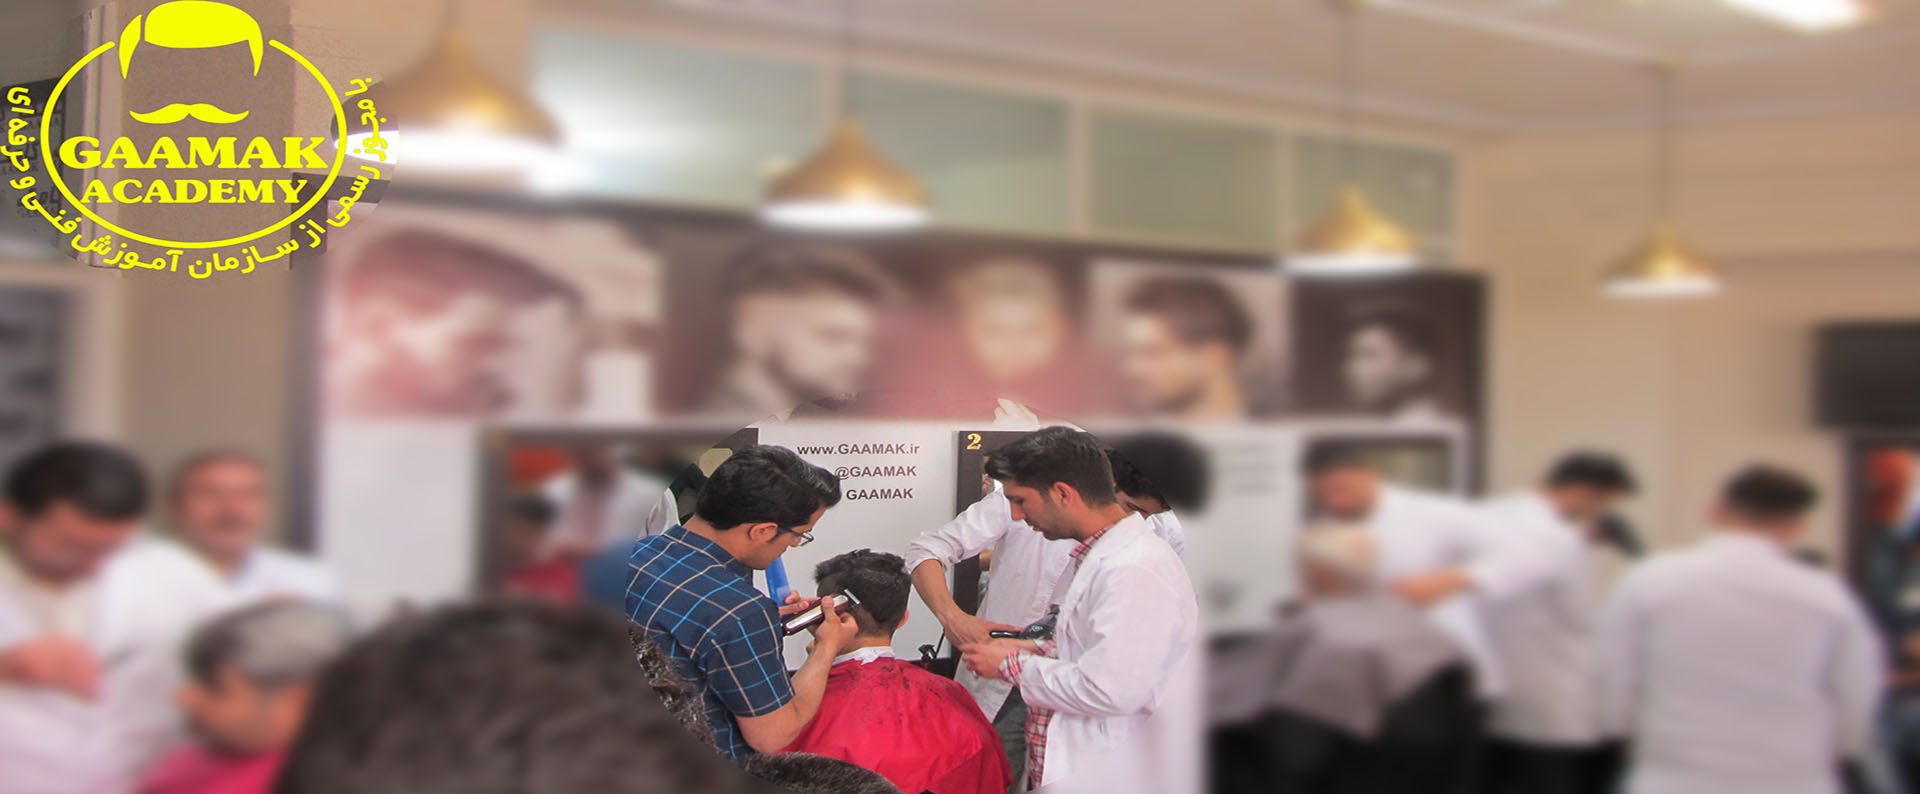 آموزش آرایشگری در آموزشگاه گامک